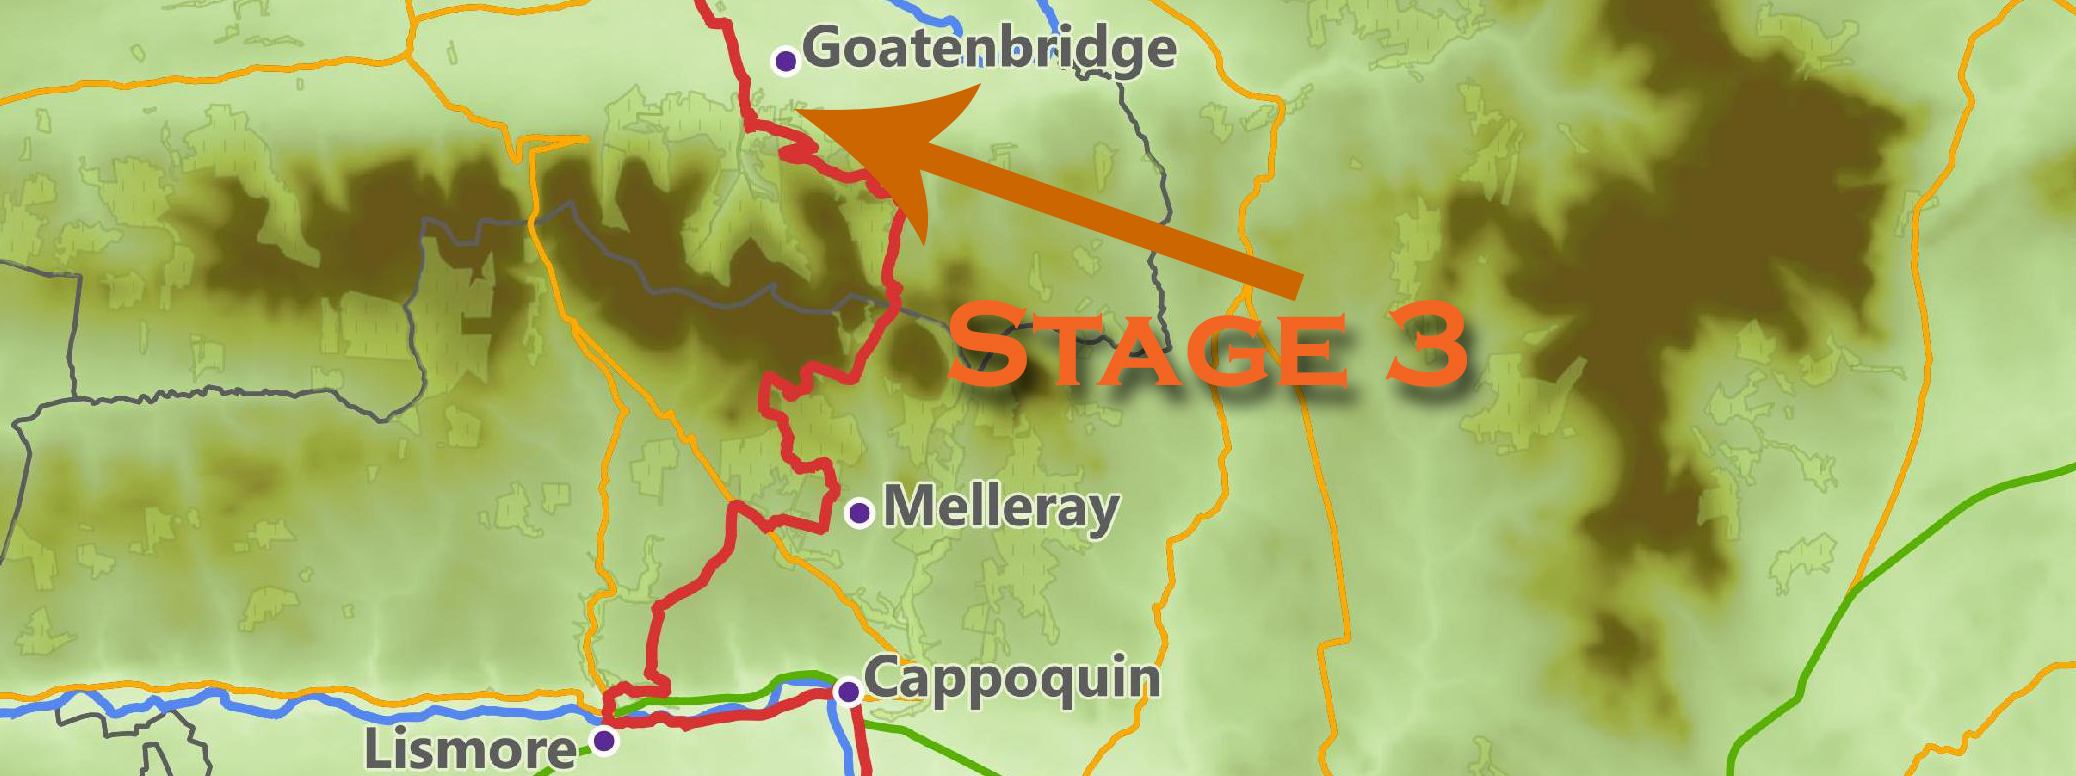 St. Declan's Way - Stage 3